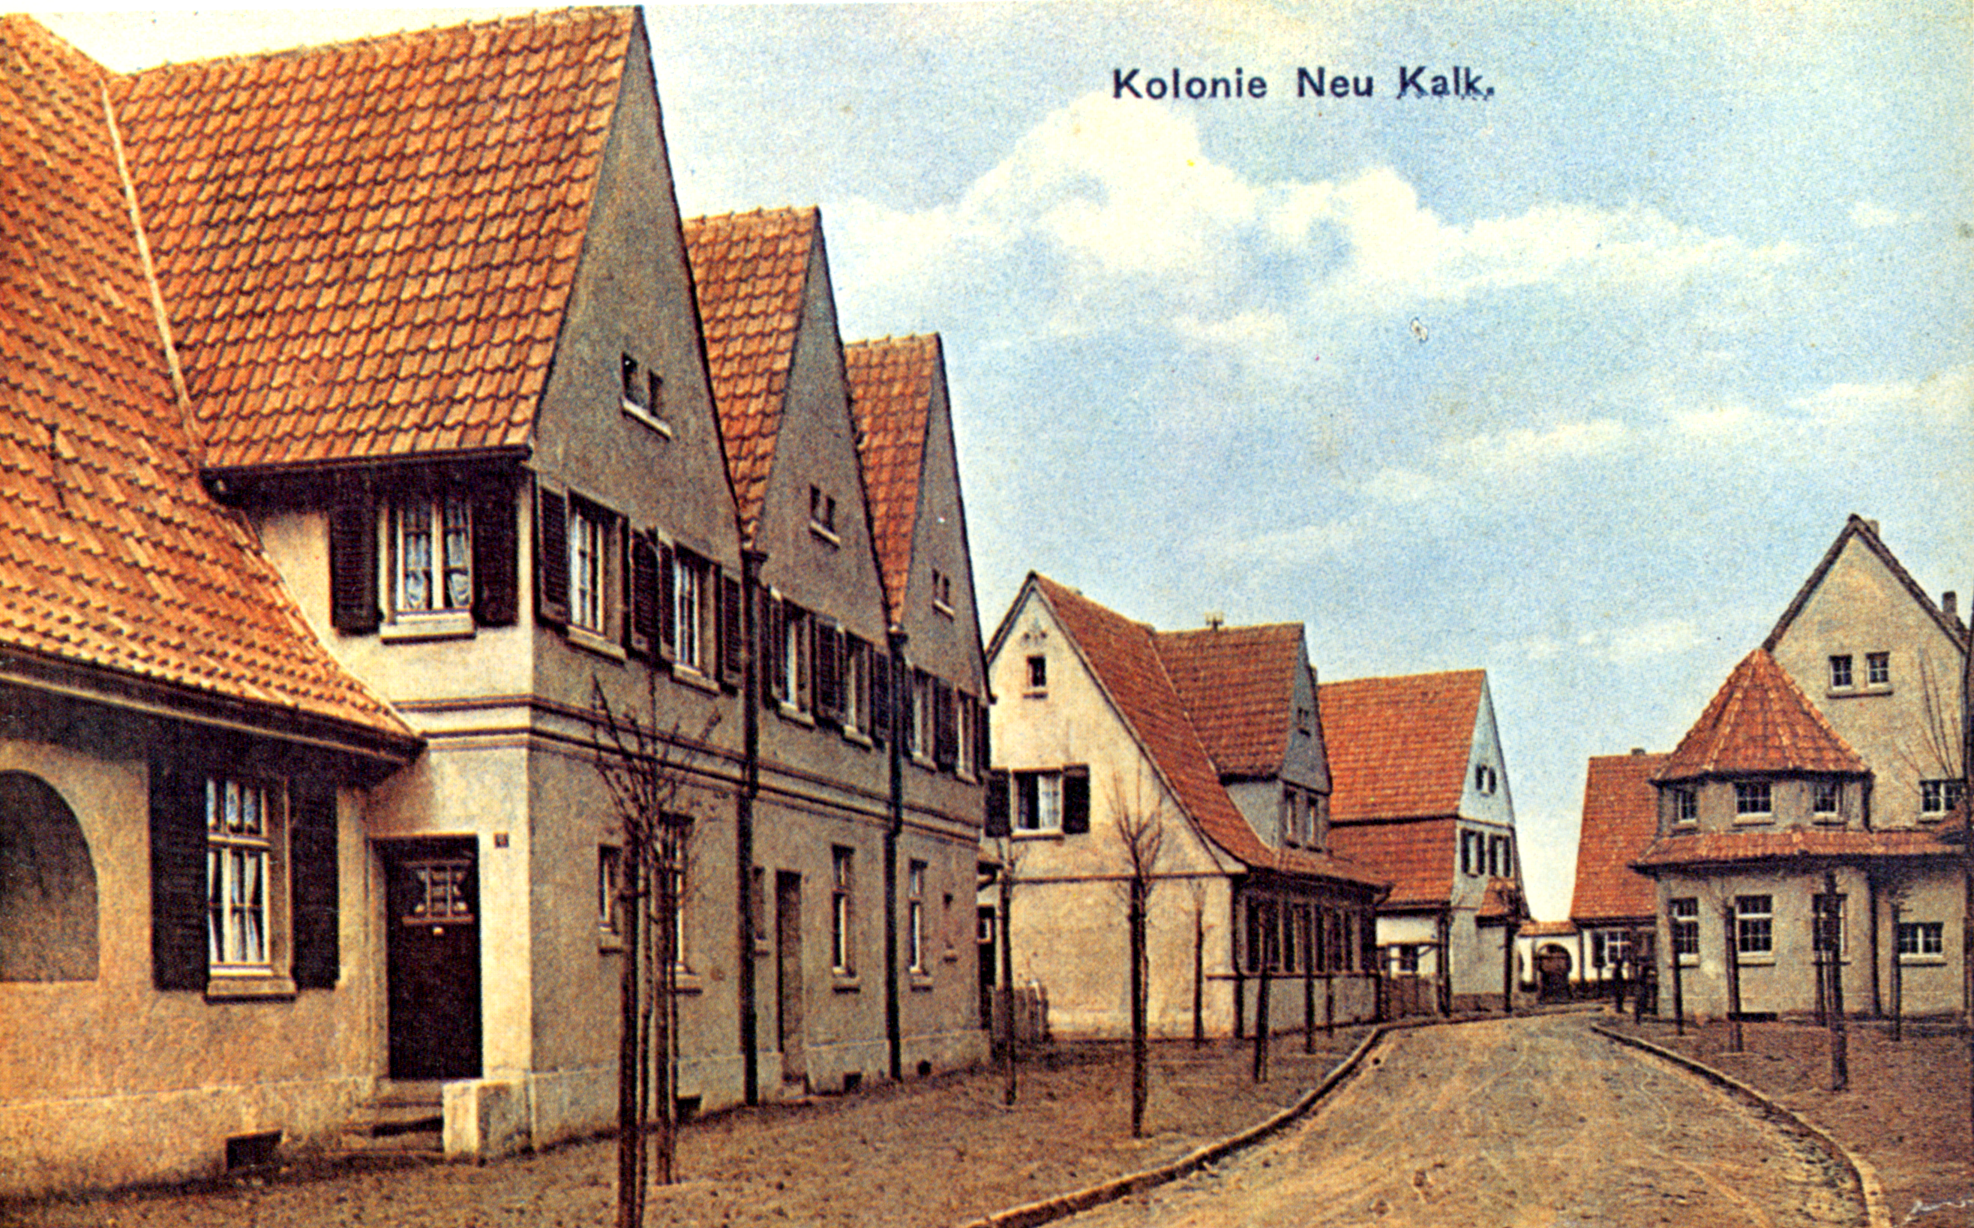 Postkarte der heutigen Oberlarer Straße, Fotograf unbekannt, veröffentlicht u.a. bei Rolf Hönscheid: Rote Kolonie, Troisdorfer Jahresheften, 1979